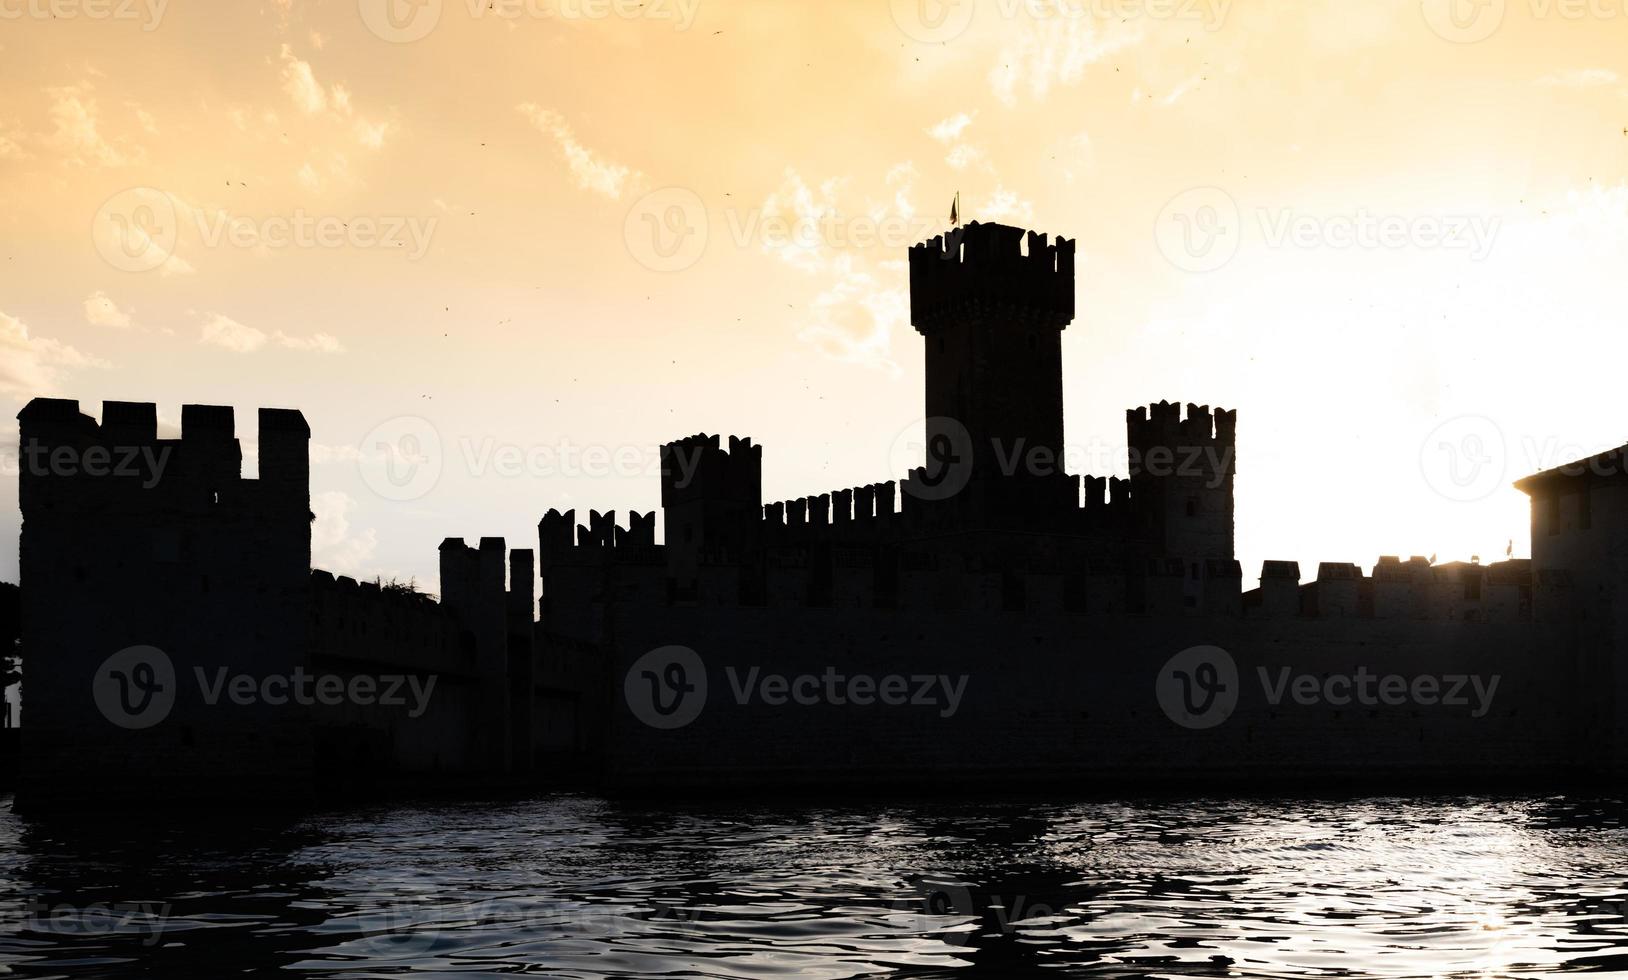 italia - silueta del castillo de sirmone en el lago de garda al atardecer. arquitectura medieval con torre. foto